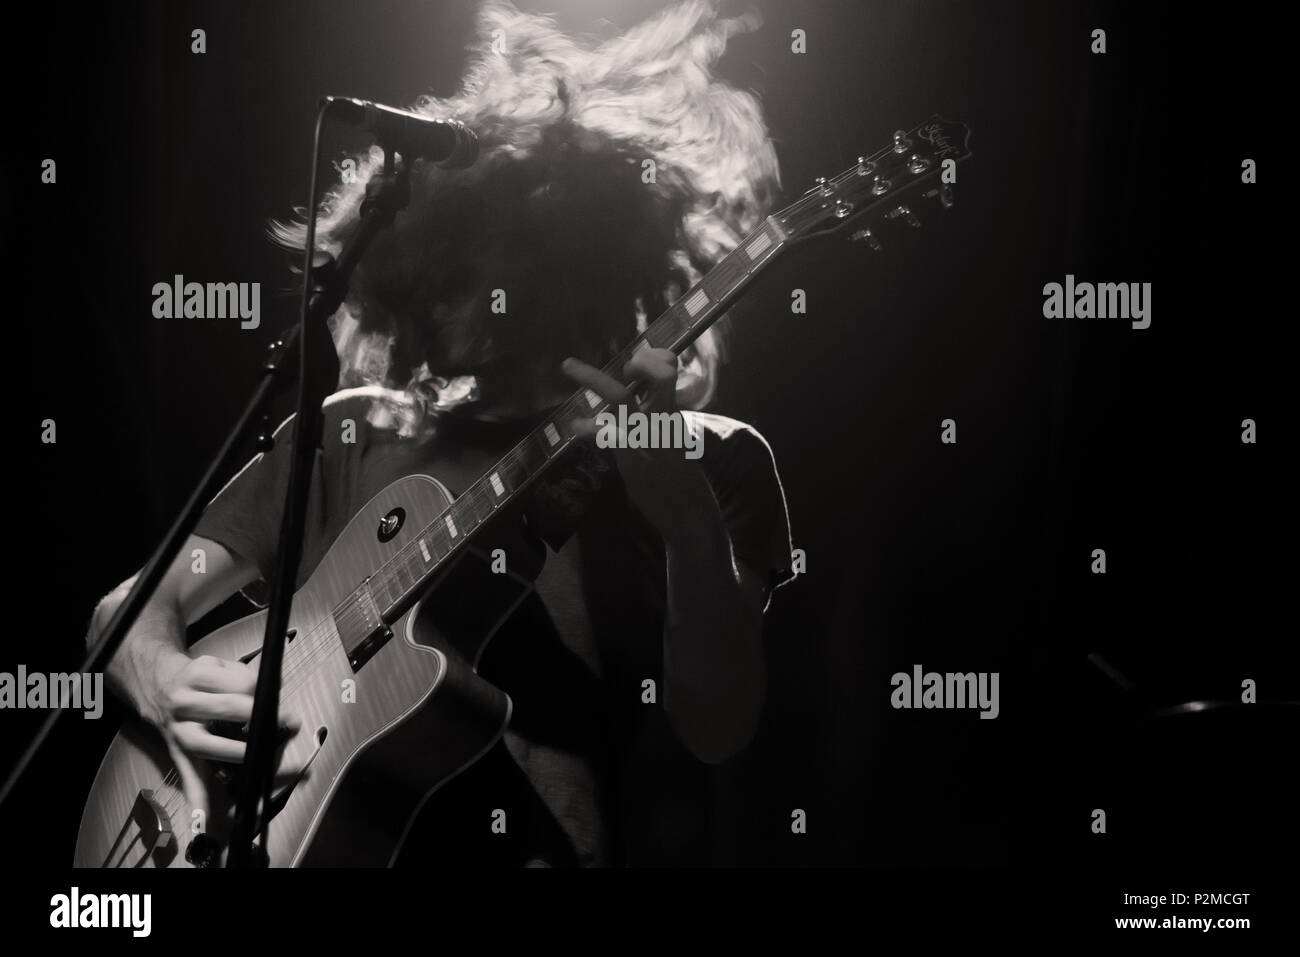 Image monochromatique d'un guitariste aux cheveux longs déplace sa tête durant un solo sur scène Banque D'Images